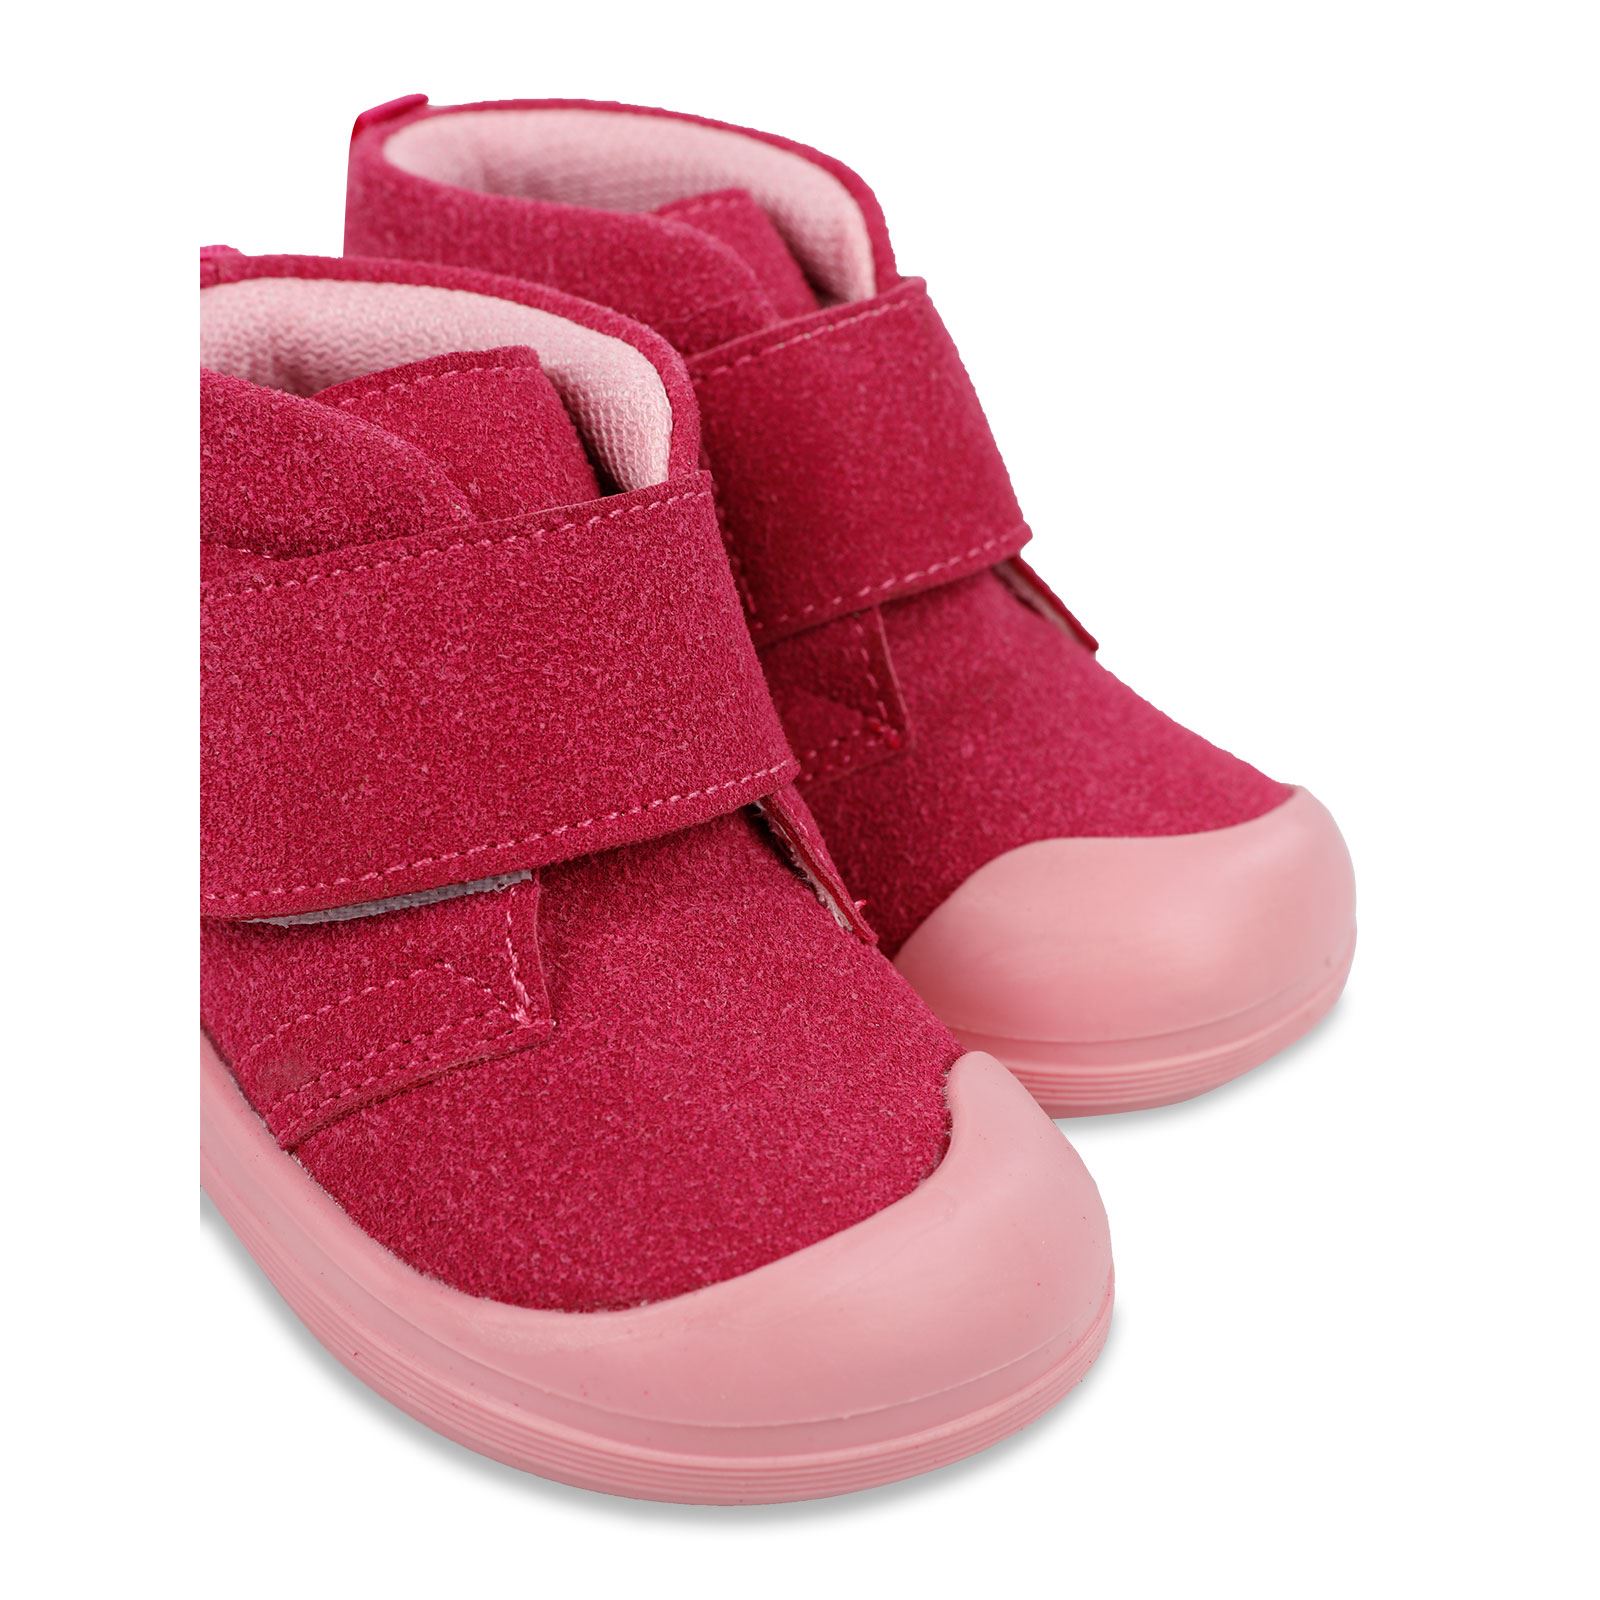 Civil Baby Kız Bebek İlk Adım Ayakkabısı 19-21 Numara Fuşya